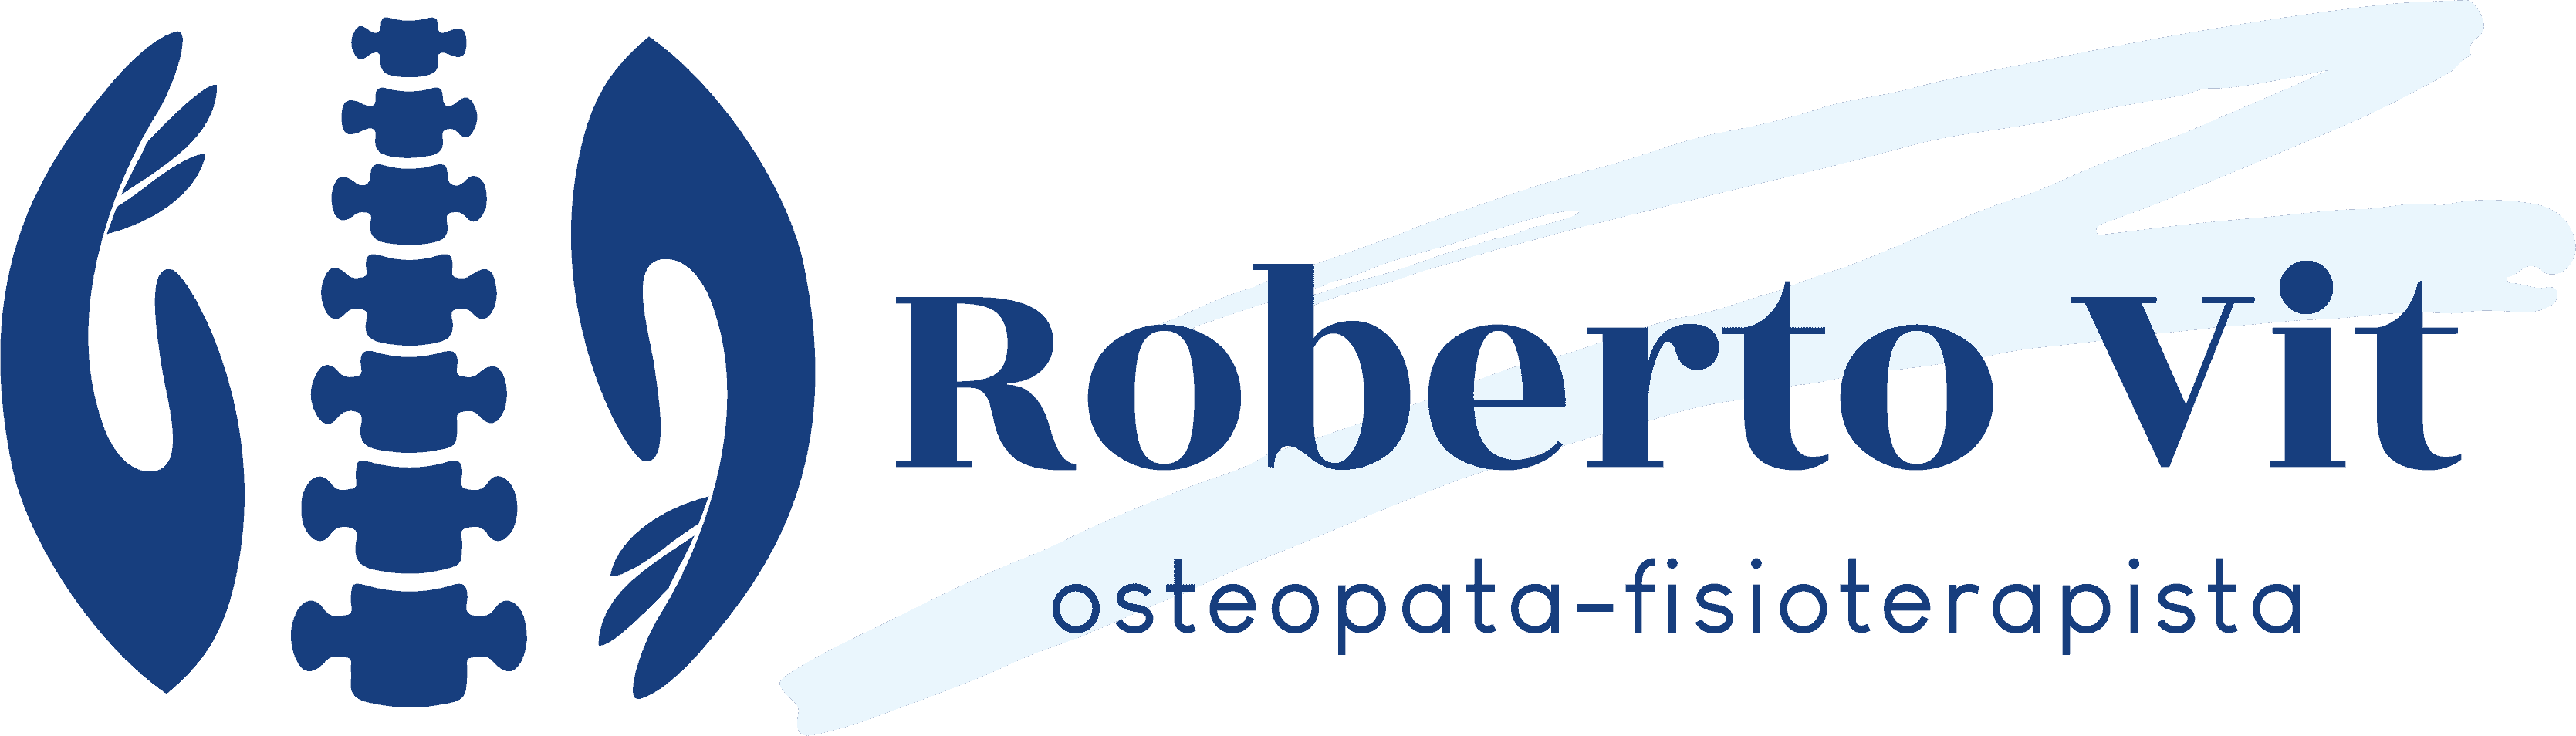 Dott. Roberto Vit osteopata-fisioterapista